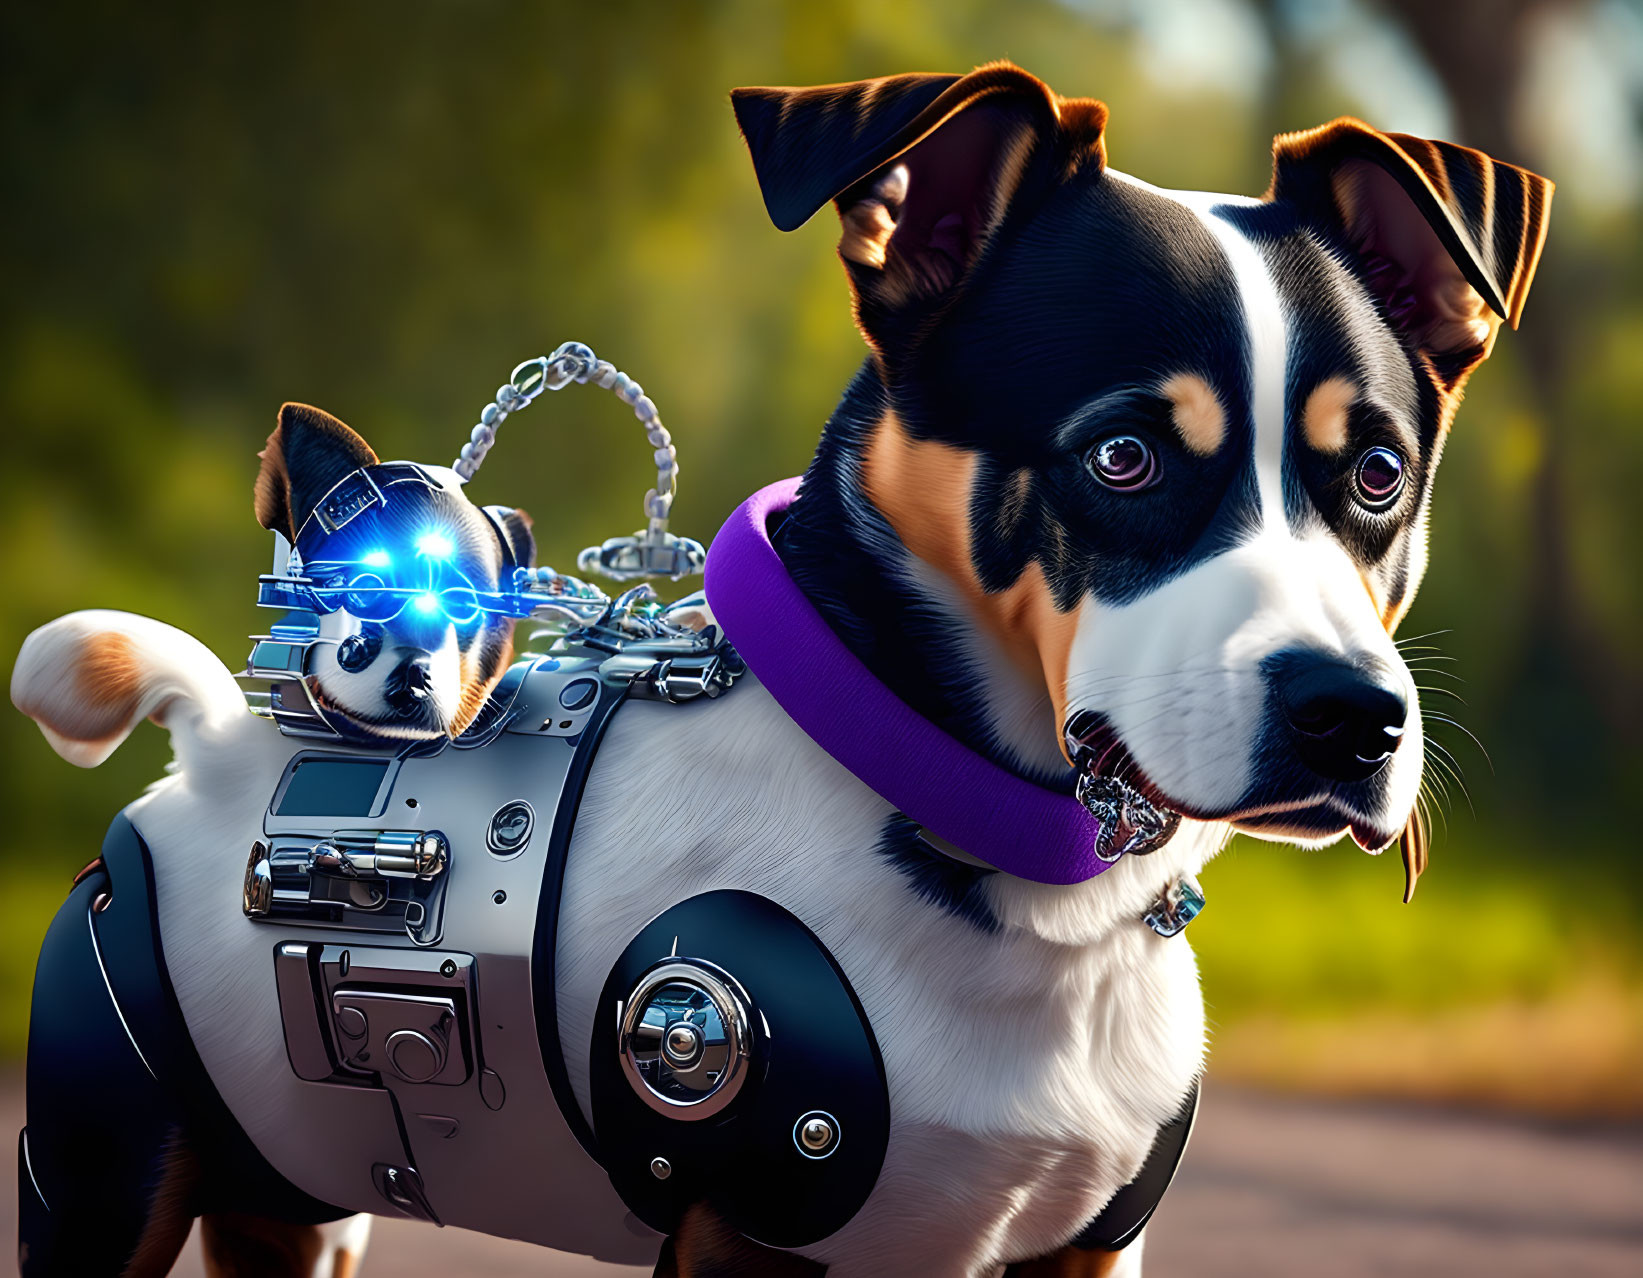 Futuristic cybernetic dog with smaller robotic companion